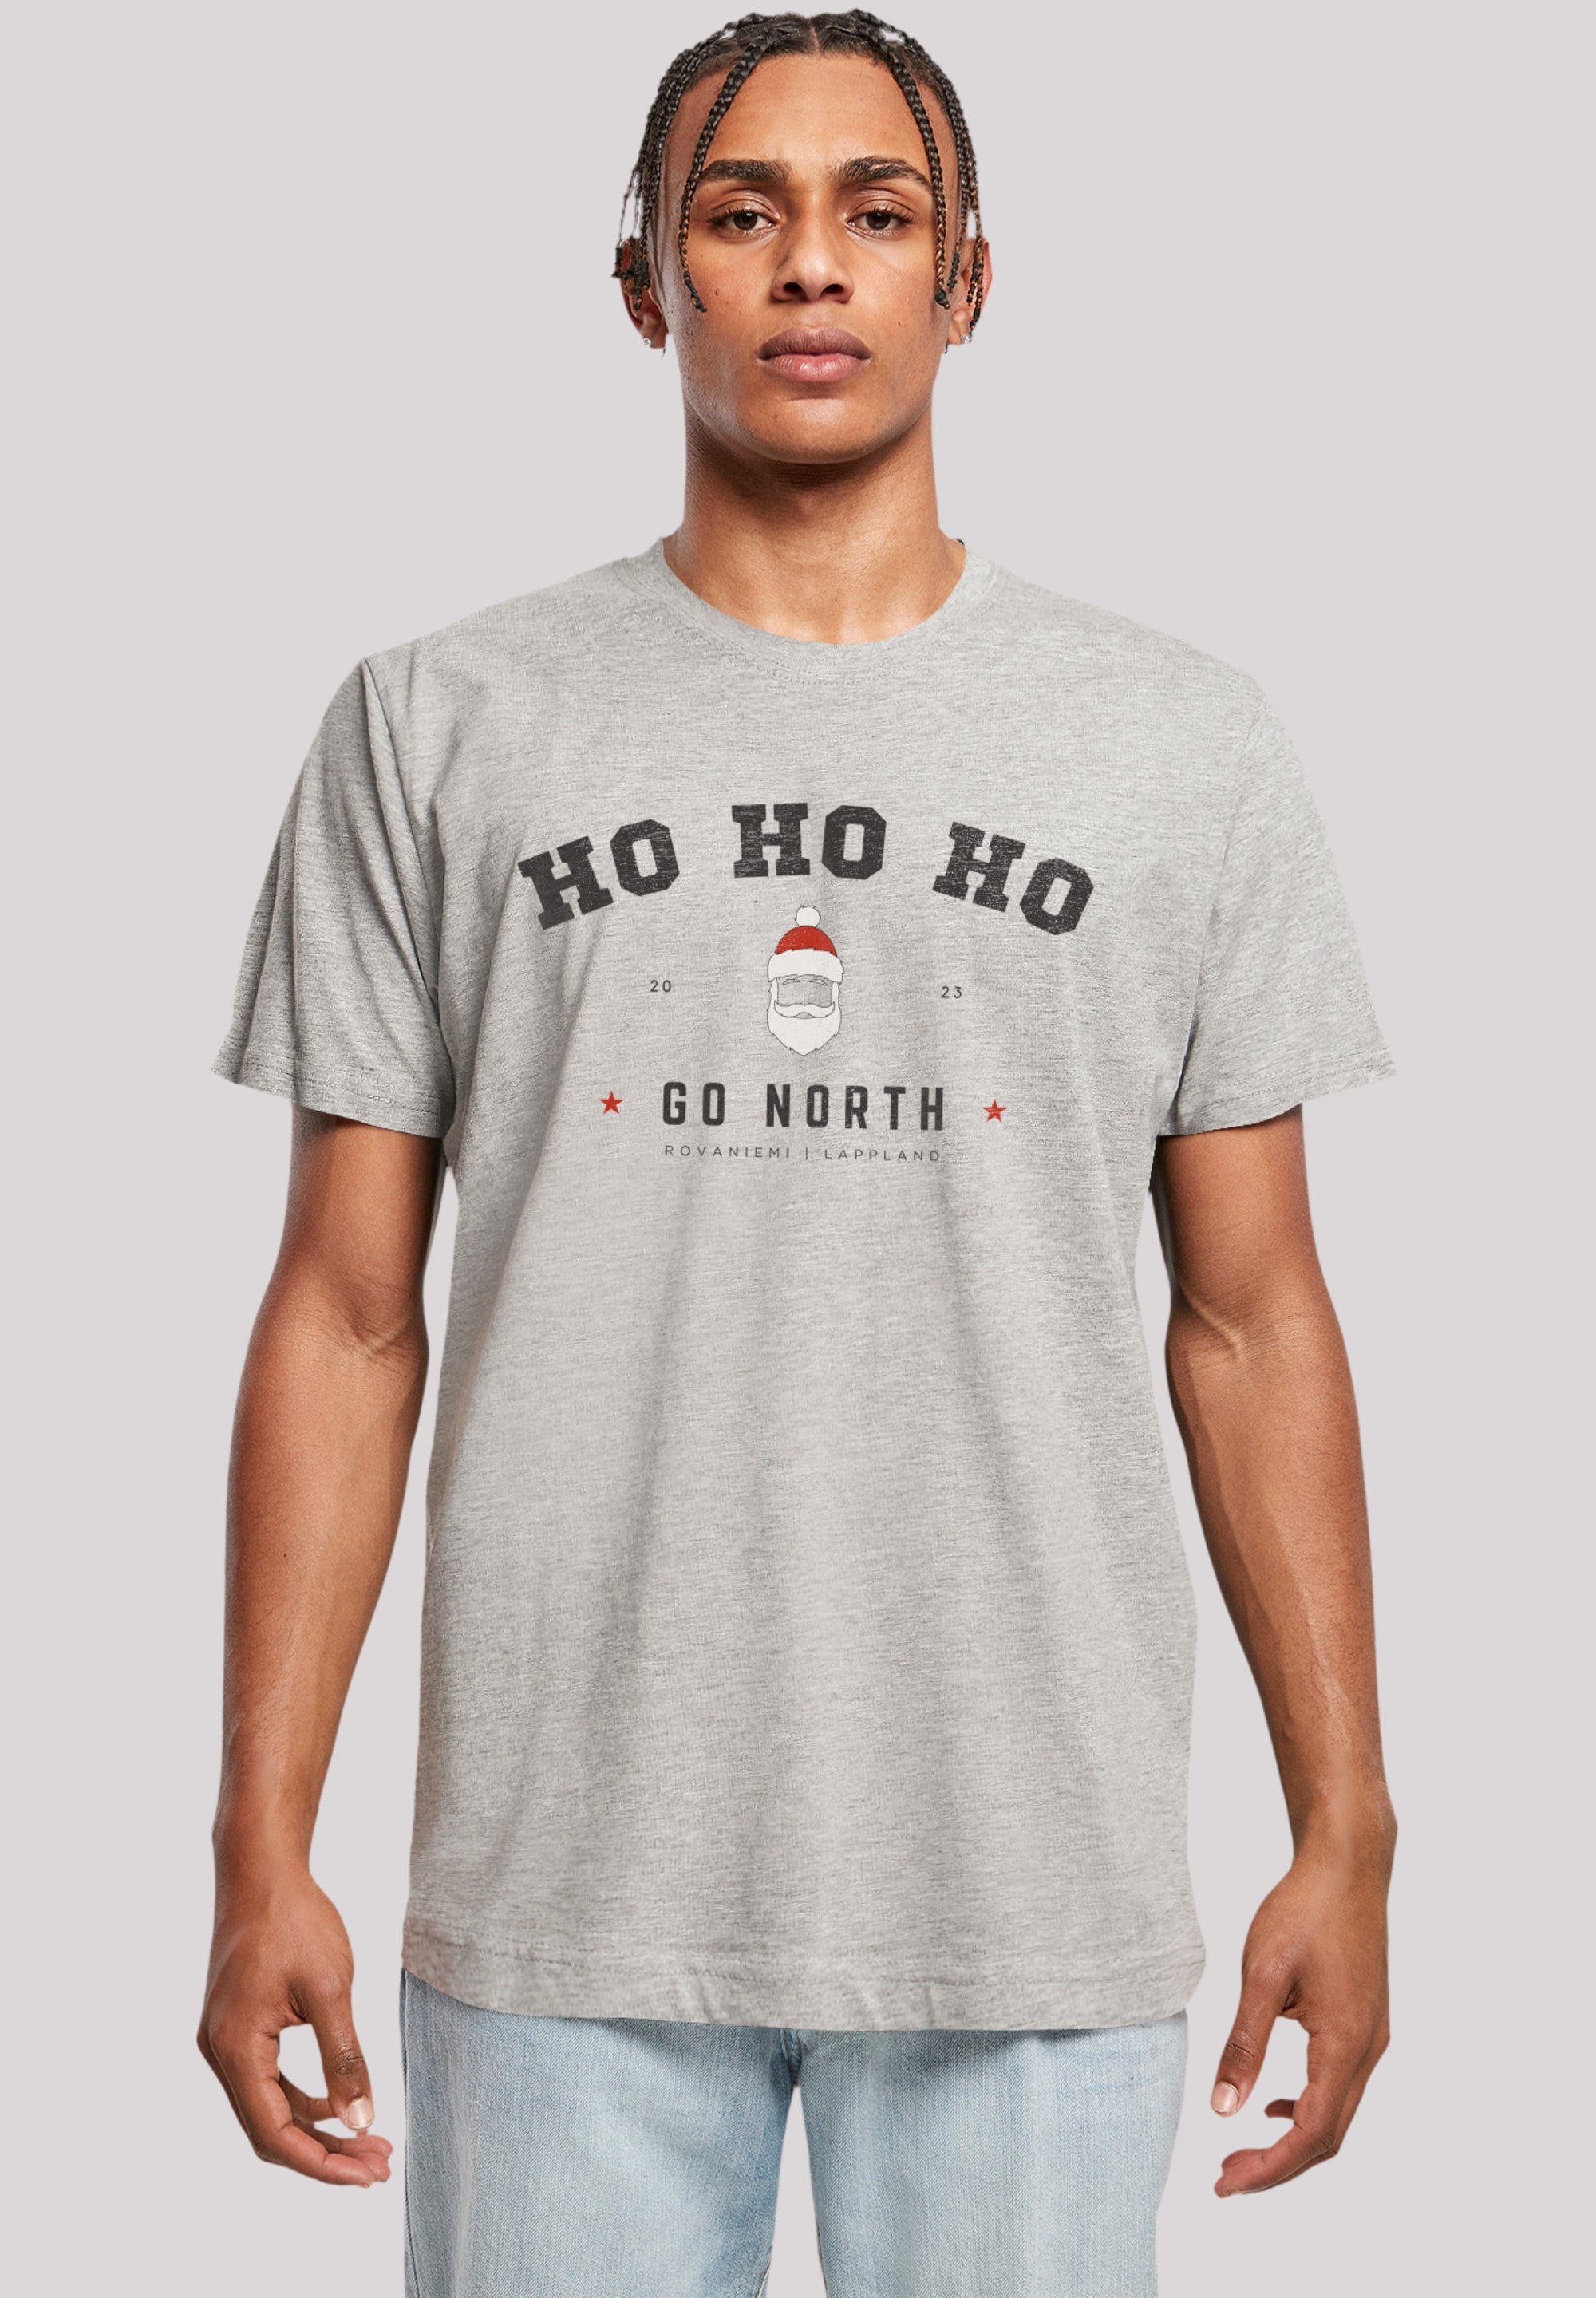 F4NT4STIC T-Shirt Weihnachten«, Santa Weihnachten, »Ho | Geschenk, kaufen BAUR Ho ▷ Claus Logo Ho